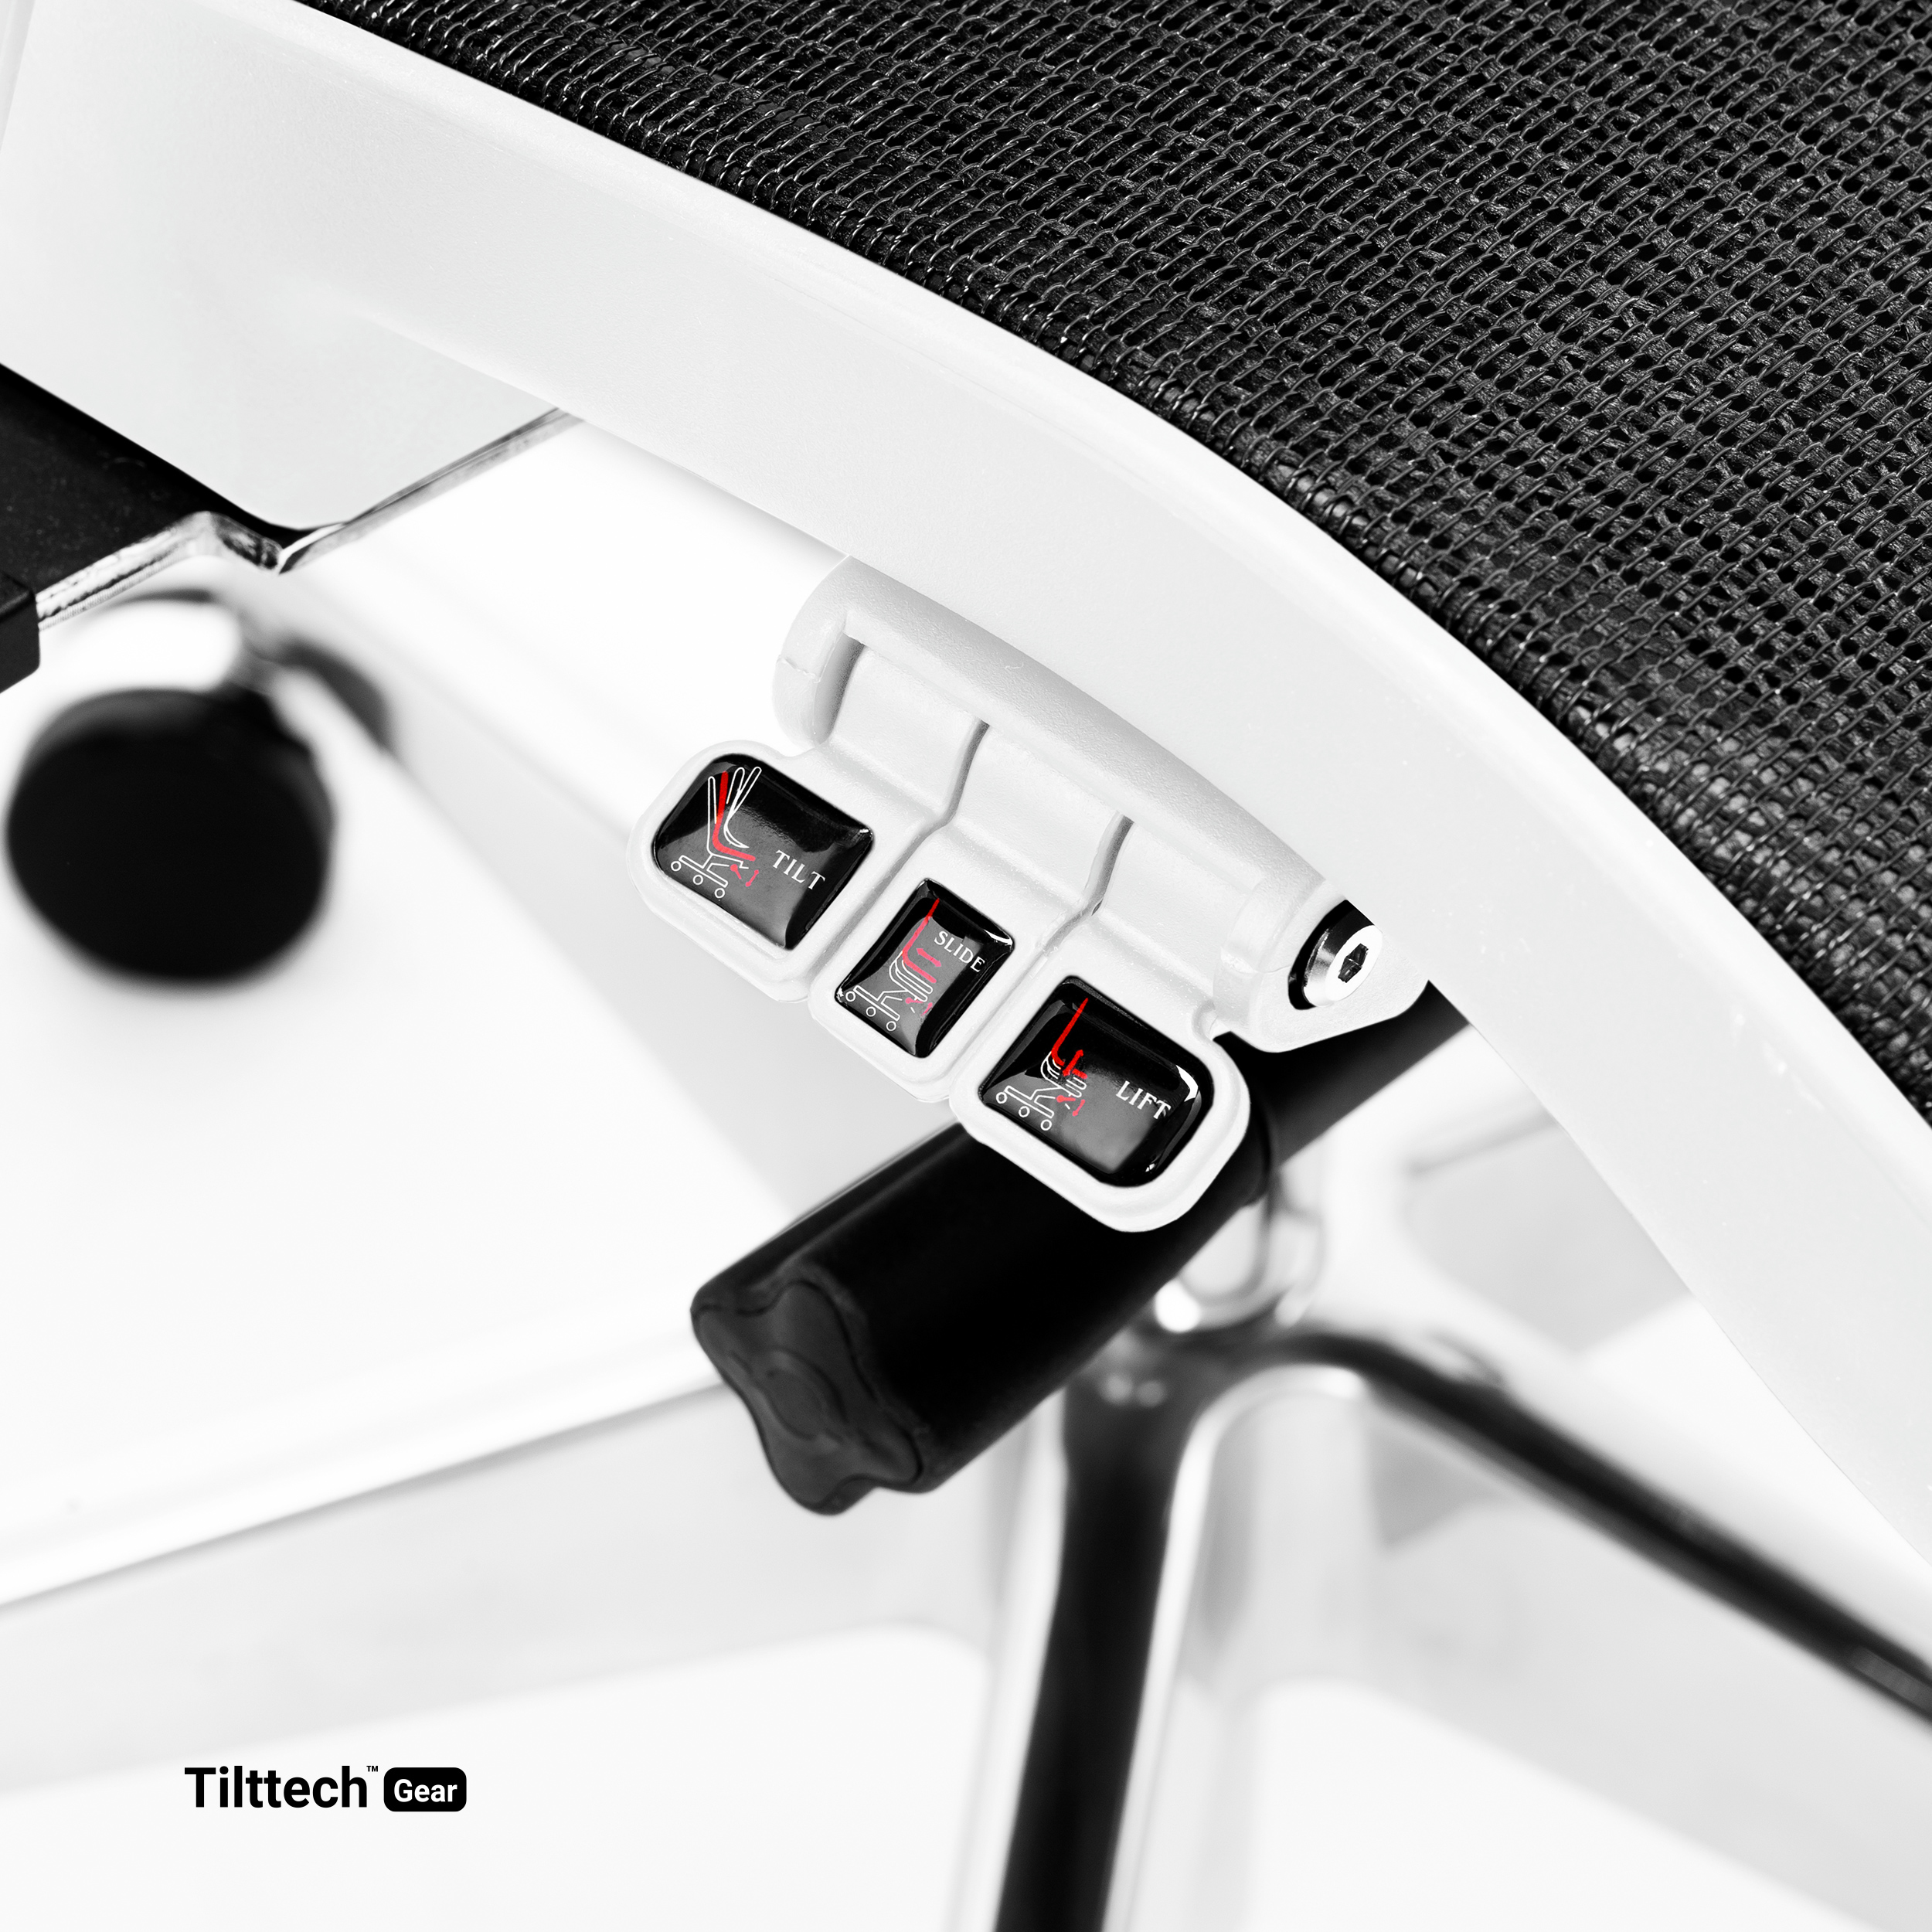 Stuhl schwarz-weiß DIABLO CHAIRS V-COMMANDER Ergonomischer | | Bürostuhl Schreibtischstuhl BÜROSTUHL